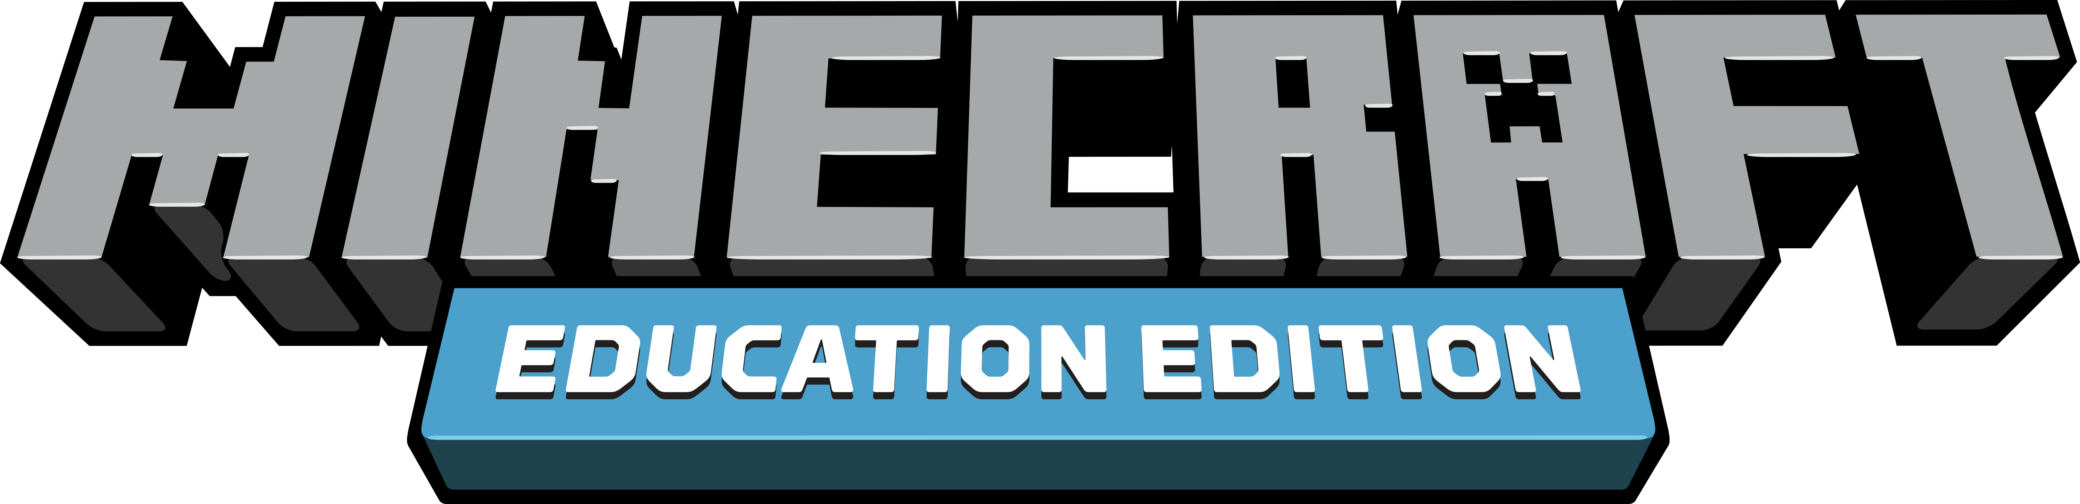 Edition logo. Майнкрафт эдукатион эдишн. Майнкрафт образовательное издание. Minecraft Education Edition логотип. Майнкрафт Эдьюкейшн.